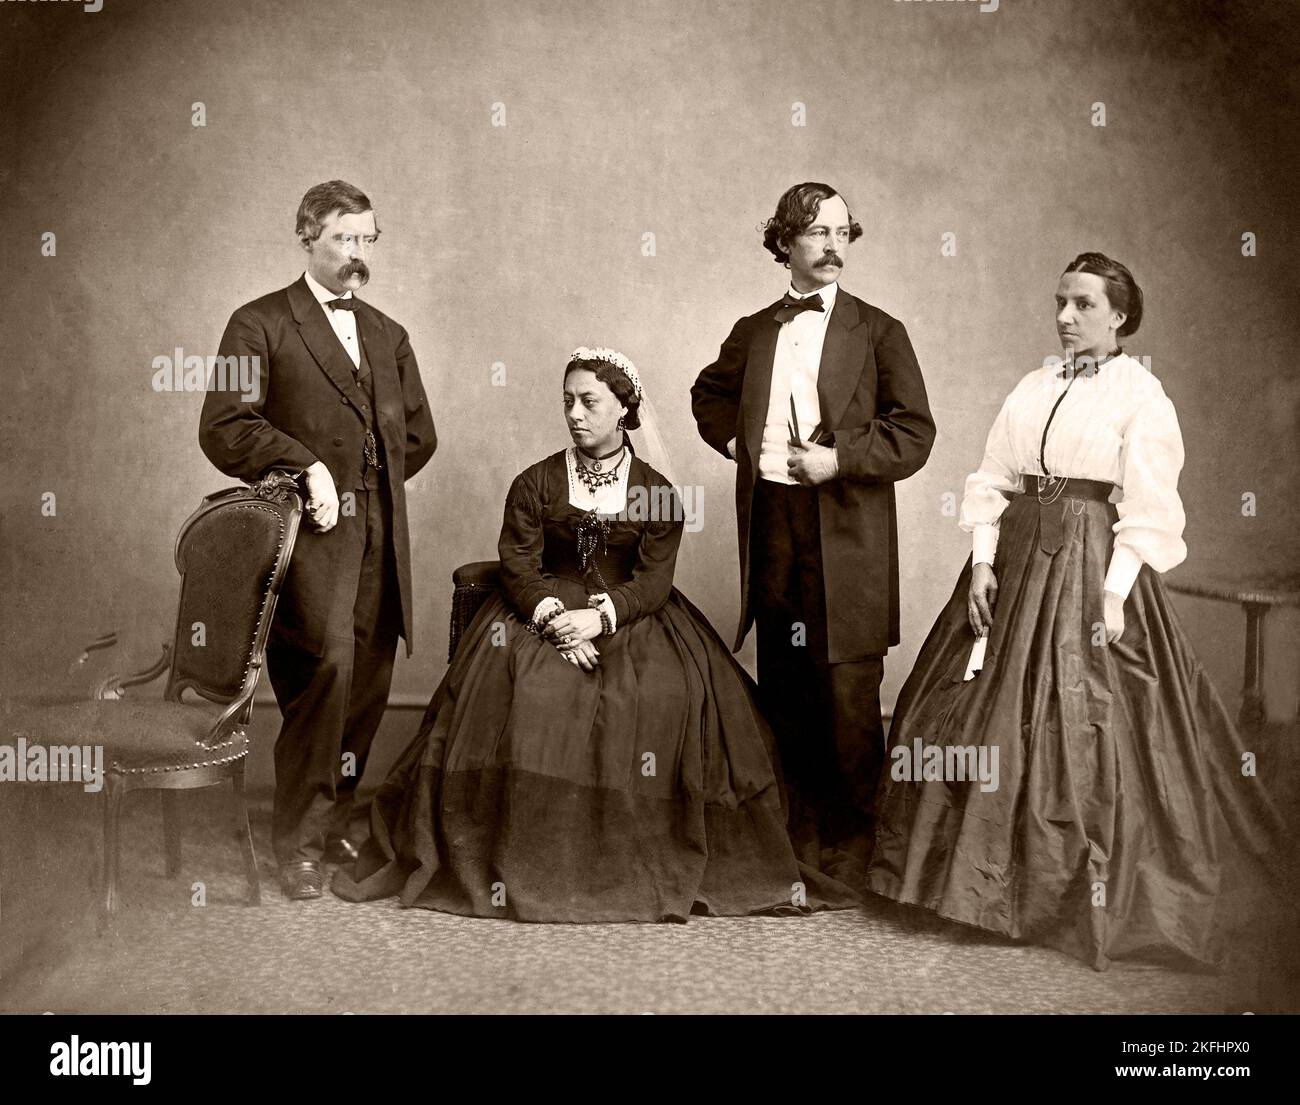 La reine Emma d'Hawaï et son entourage - photo d'Alexander Gardner en 1865 Banque D'Images